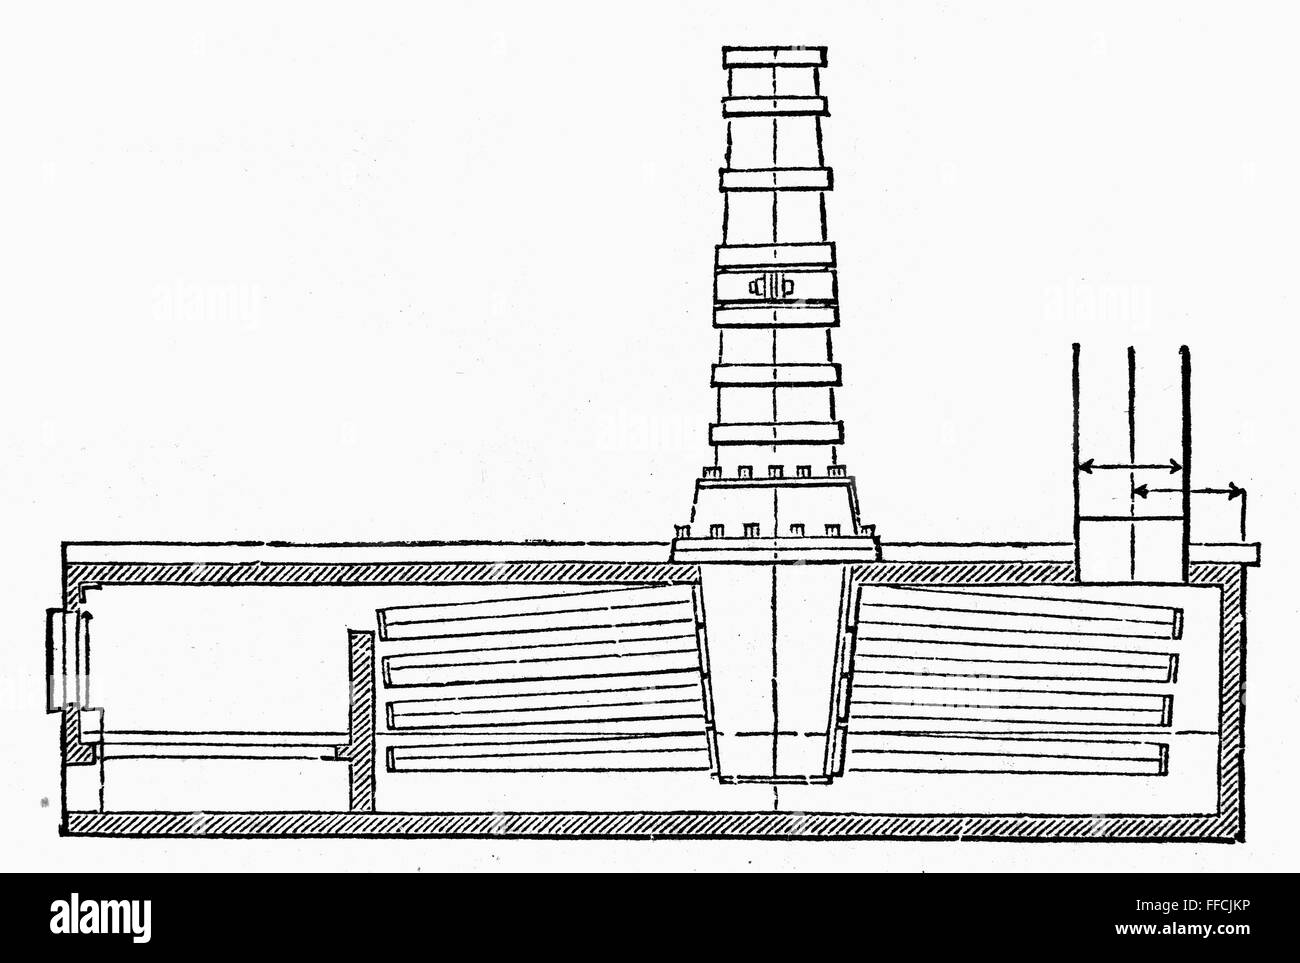 STEVENS: Sección caldera. /NSectional caldera a bordo de buques a vapor, construido por Robert L. Stevens. Grabado de línea, del siglo XIX. Foto de stock